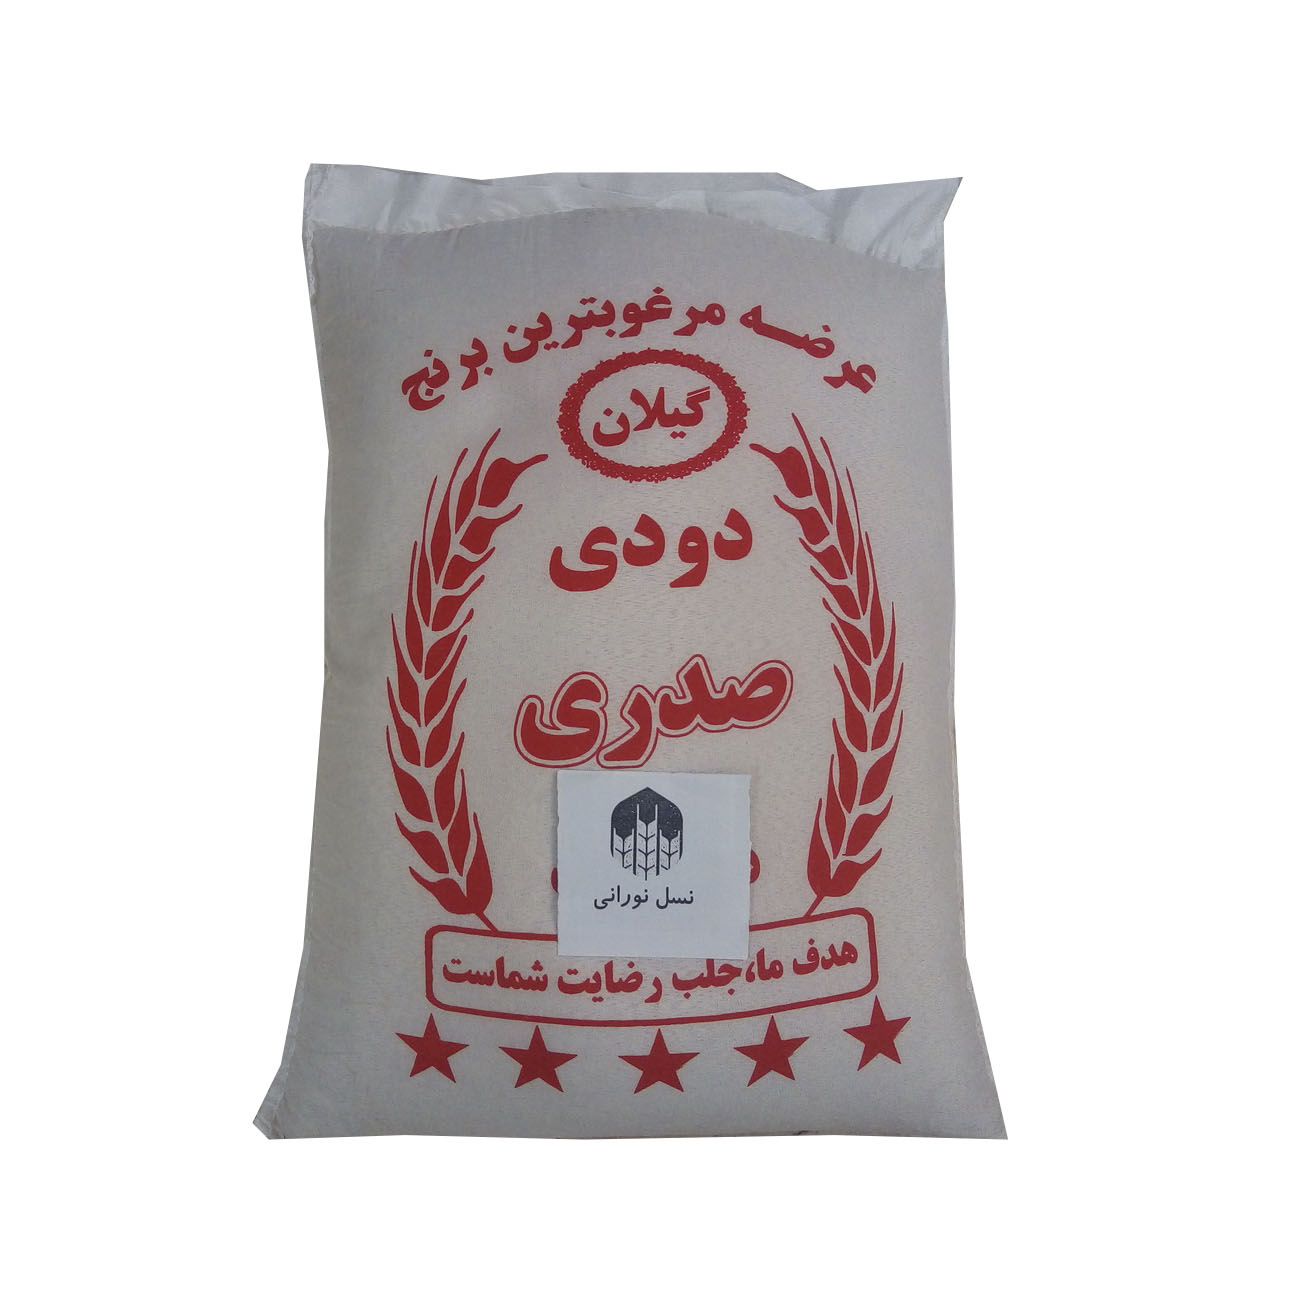 نکته خرید - قیمت روز برنج دودی هیزمی ایرانی - 10 کیلوگرم خرید